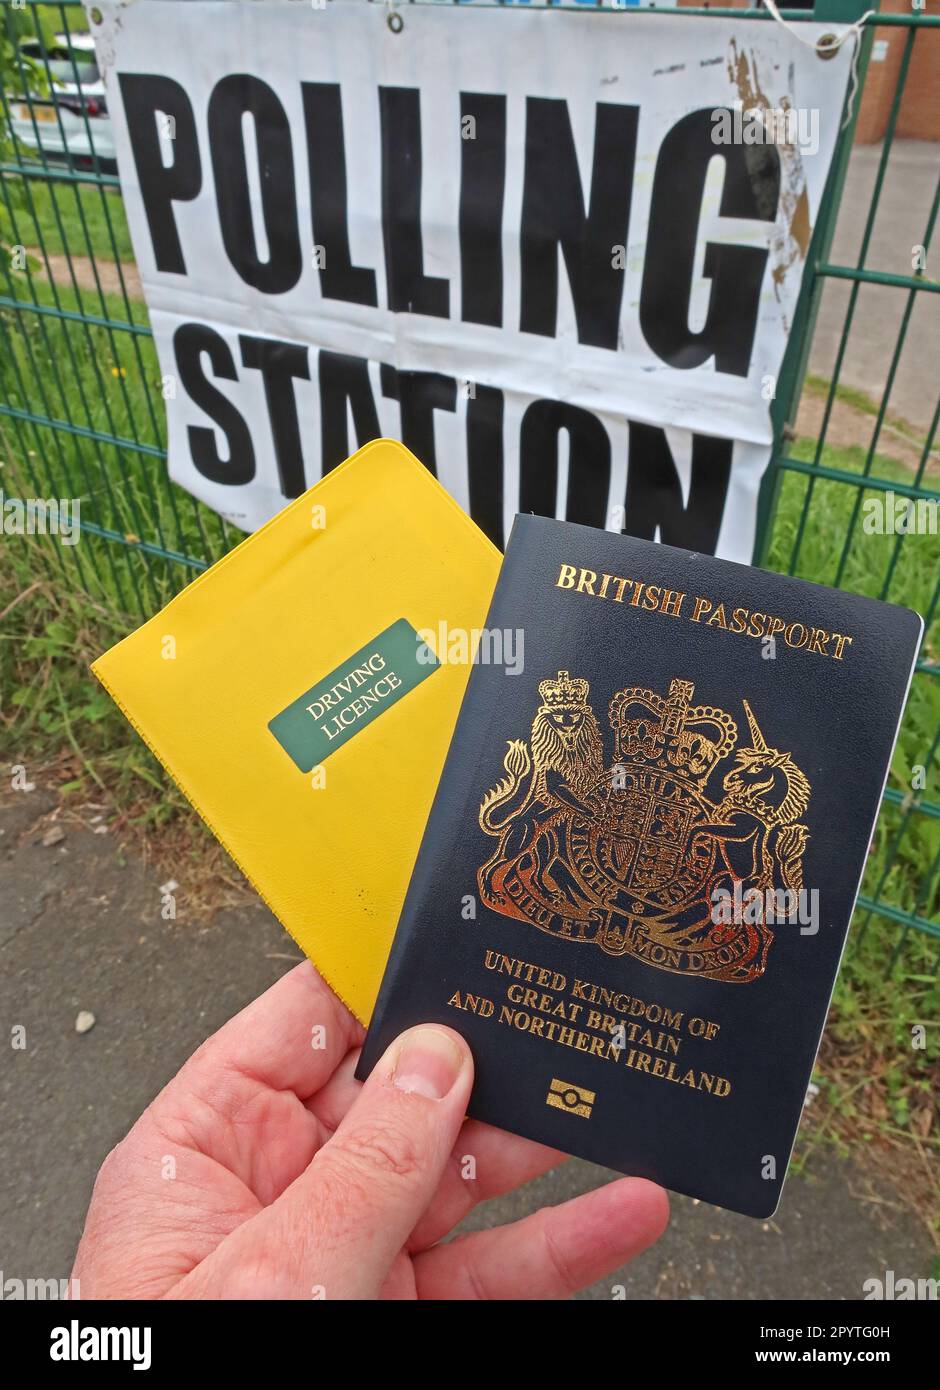 Gültiger Lichtbildausweis, Führerschein und britischer Pass, für die Wahl bei kommunalwahlen und Parlamentswahlen, Polling Station, Runcorn, England Stockfoto